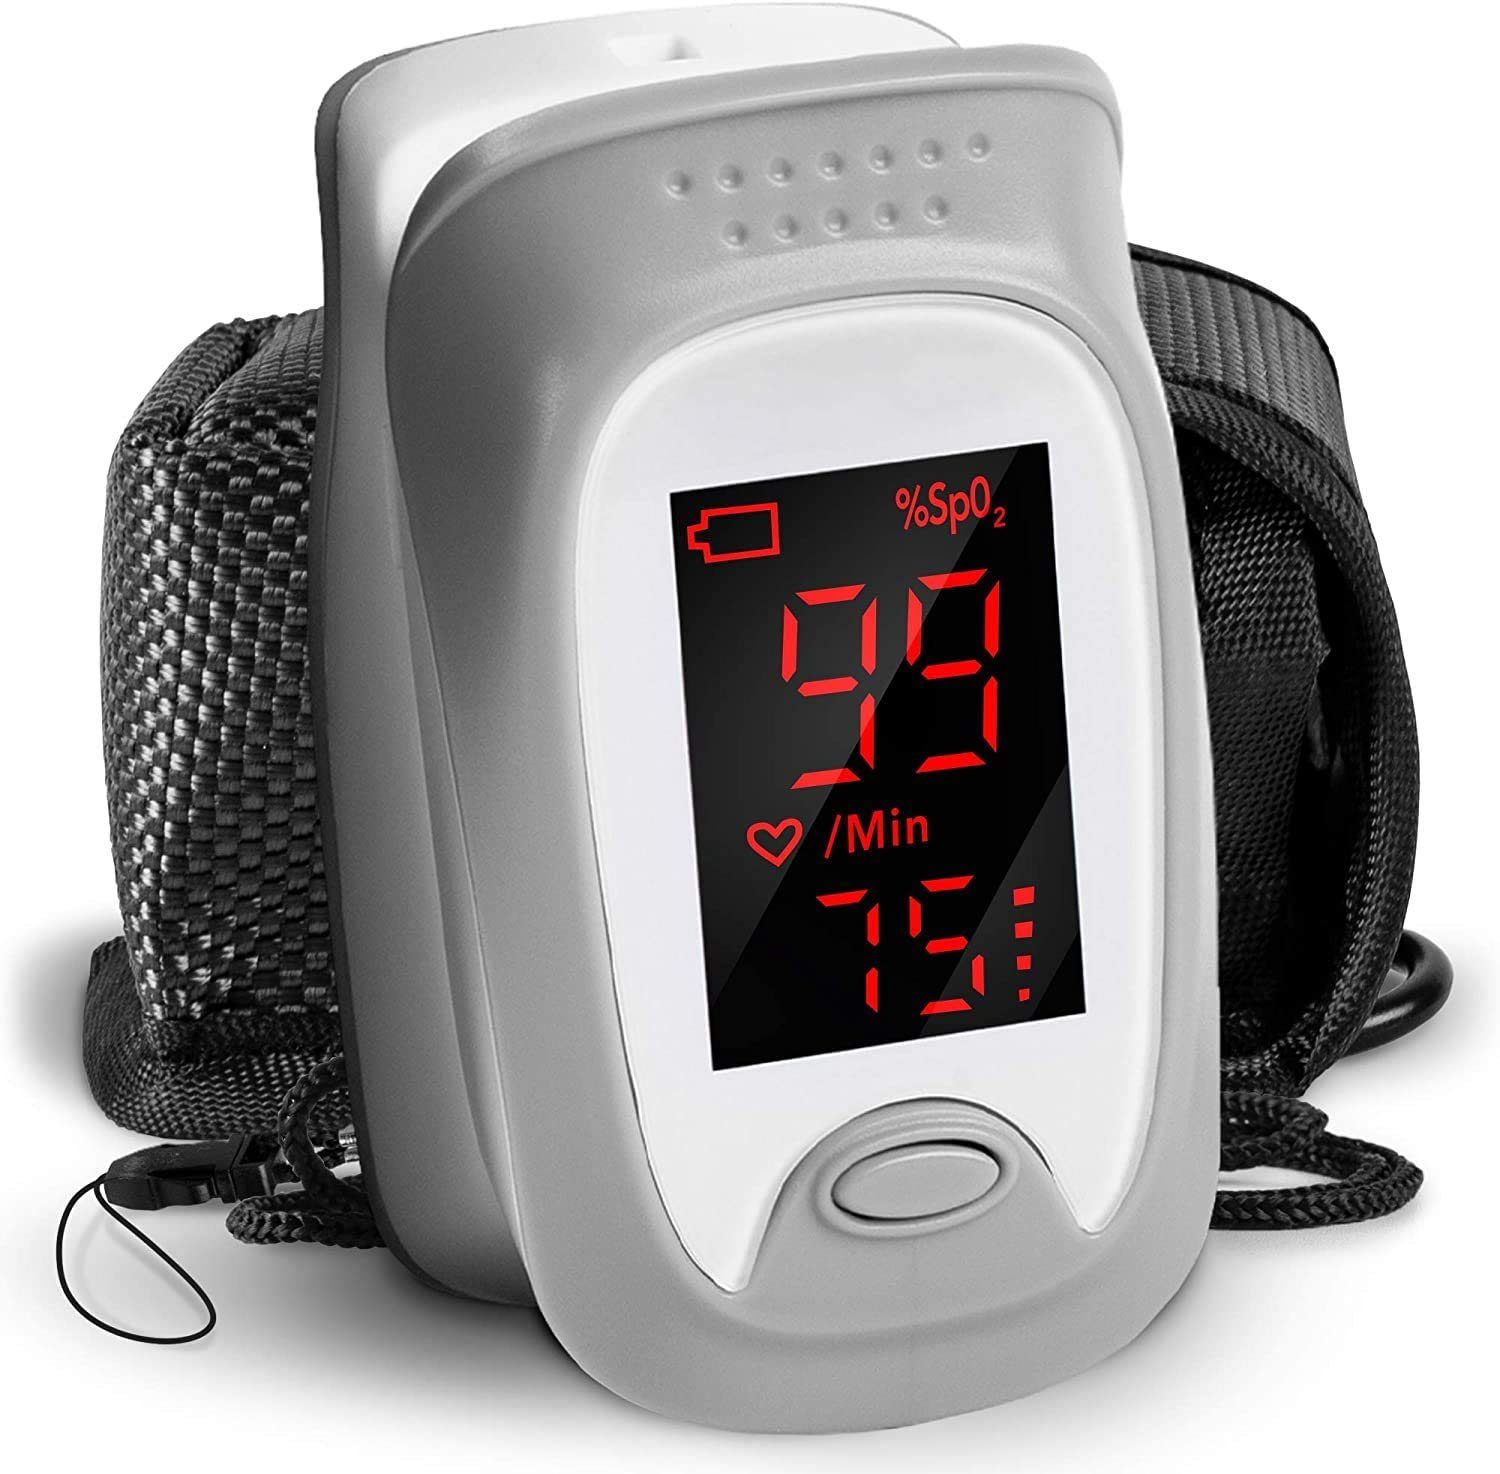 Duronic Pulsoximeter, OX01R Pulsoximeter, Ermittlung der Herzfrequenz und arteriellen Sauerstoffsättigung, Digitale Anzeige, Einfache und schmerzfreie Messung, Inklusive Halterung und Tasche